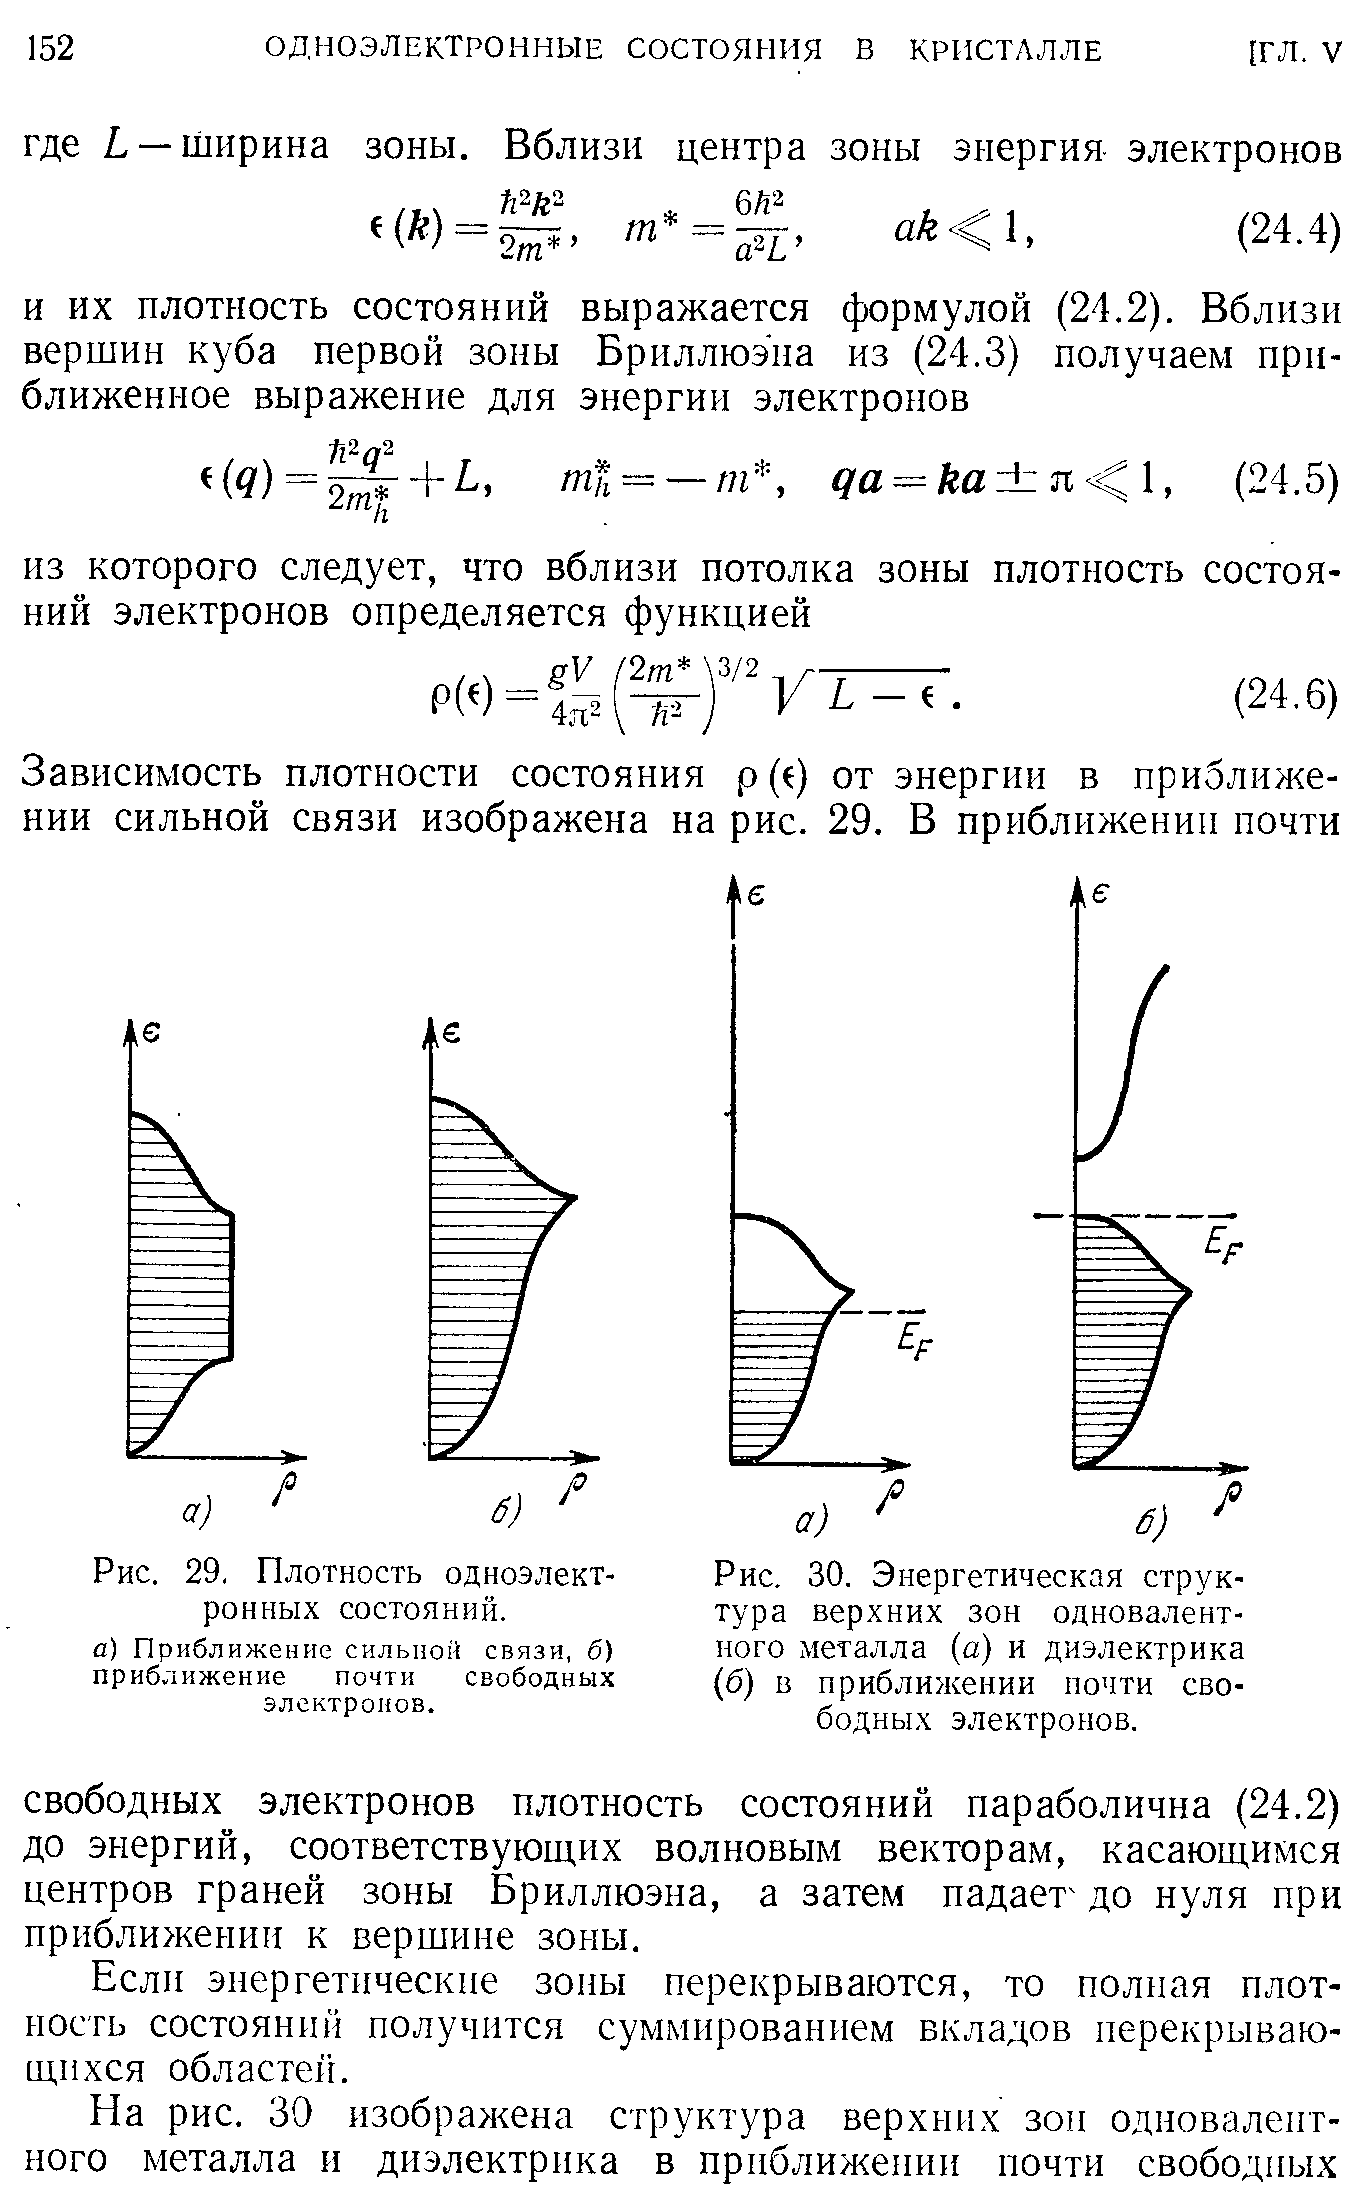 Рис. 30. Энергетическая структура верхних зон одновалентного металла (а) и диэлектрика (б) в приближении почти свободных электронов.
